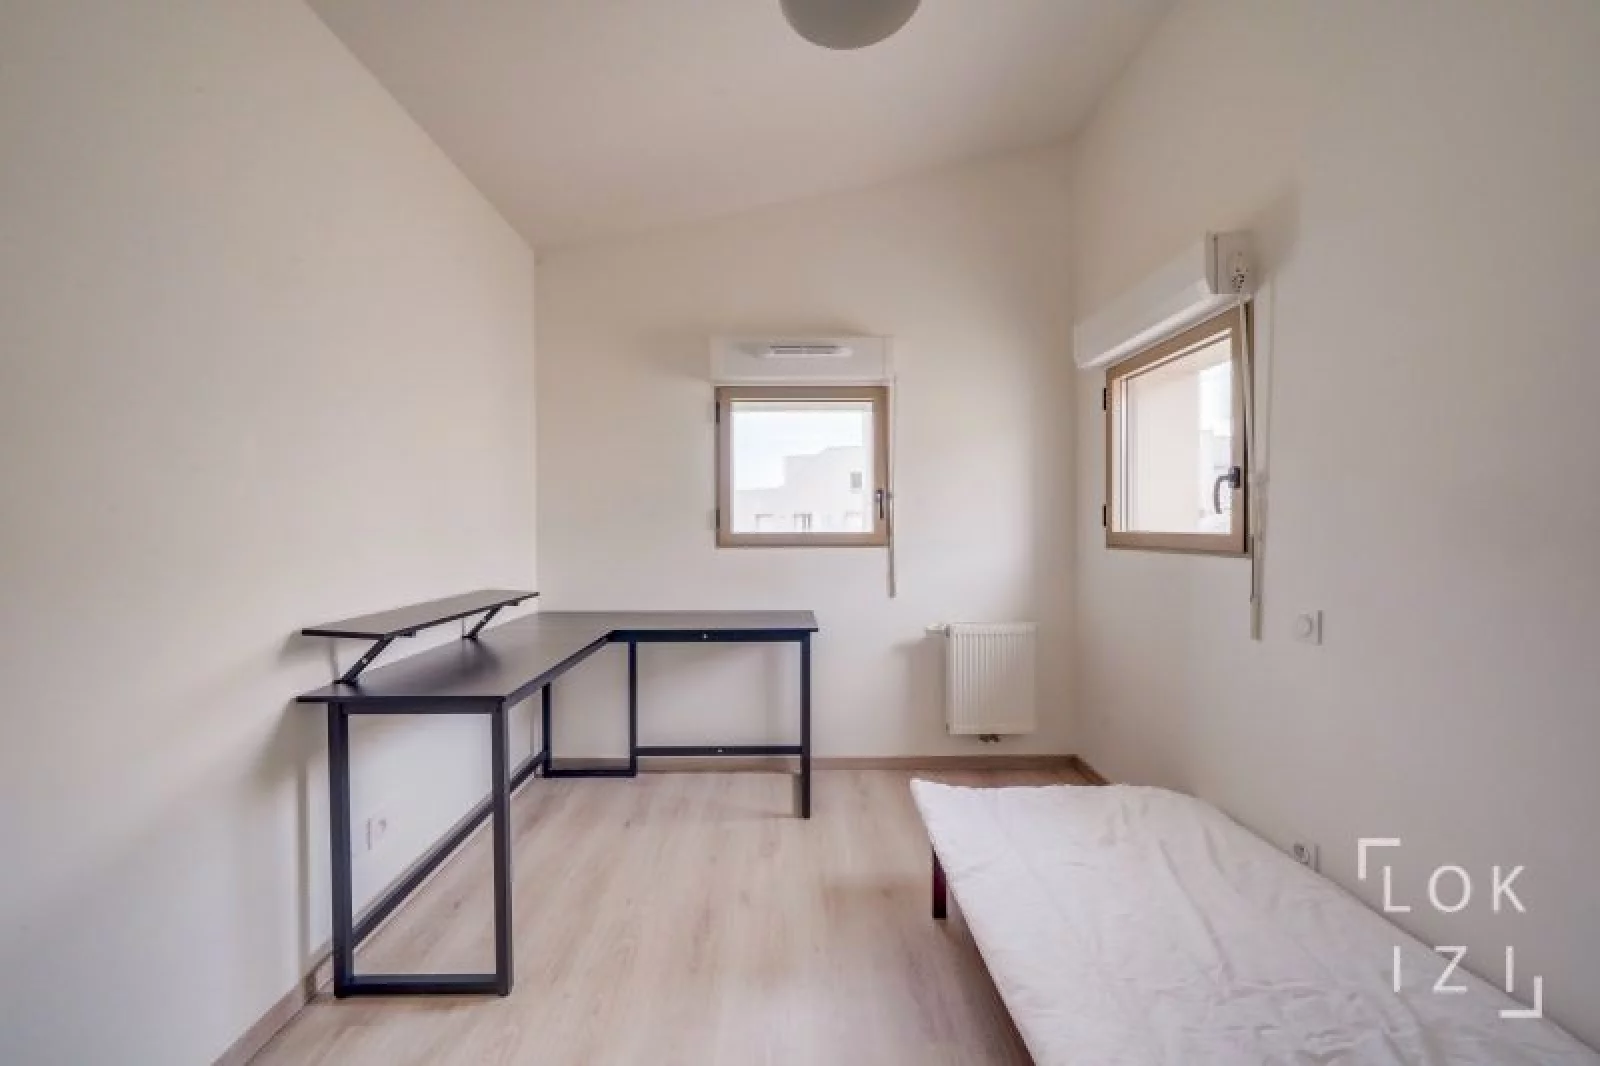 Location appartement type duplex 4 pices 92 m2 (Bordeaux - Bassins  flot)